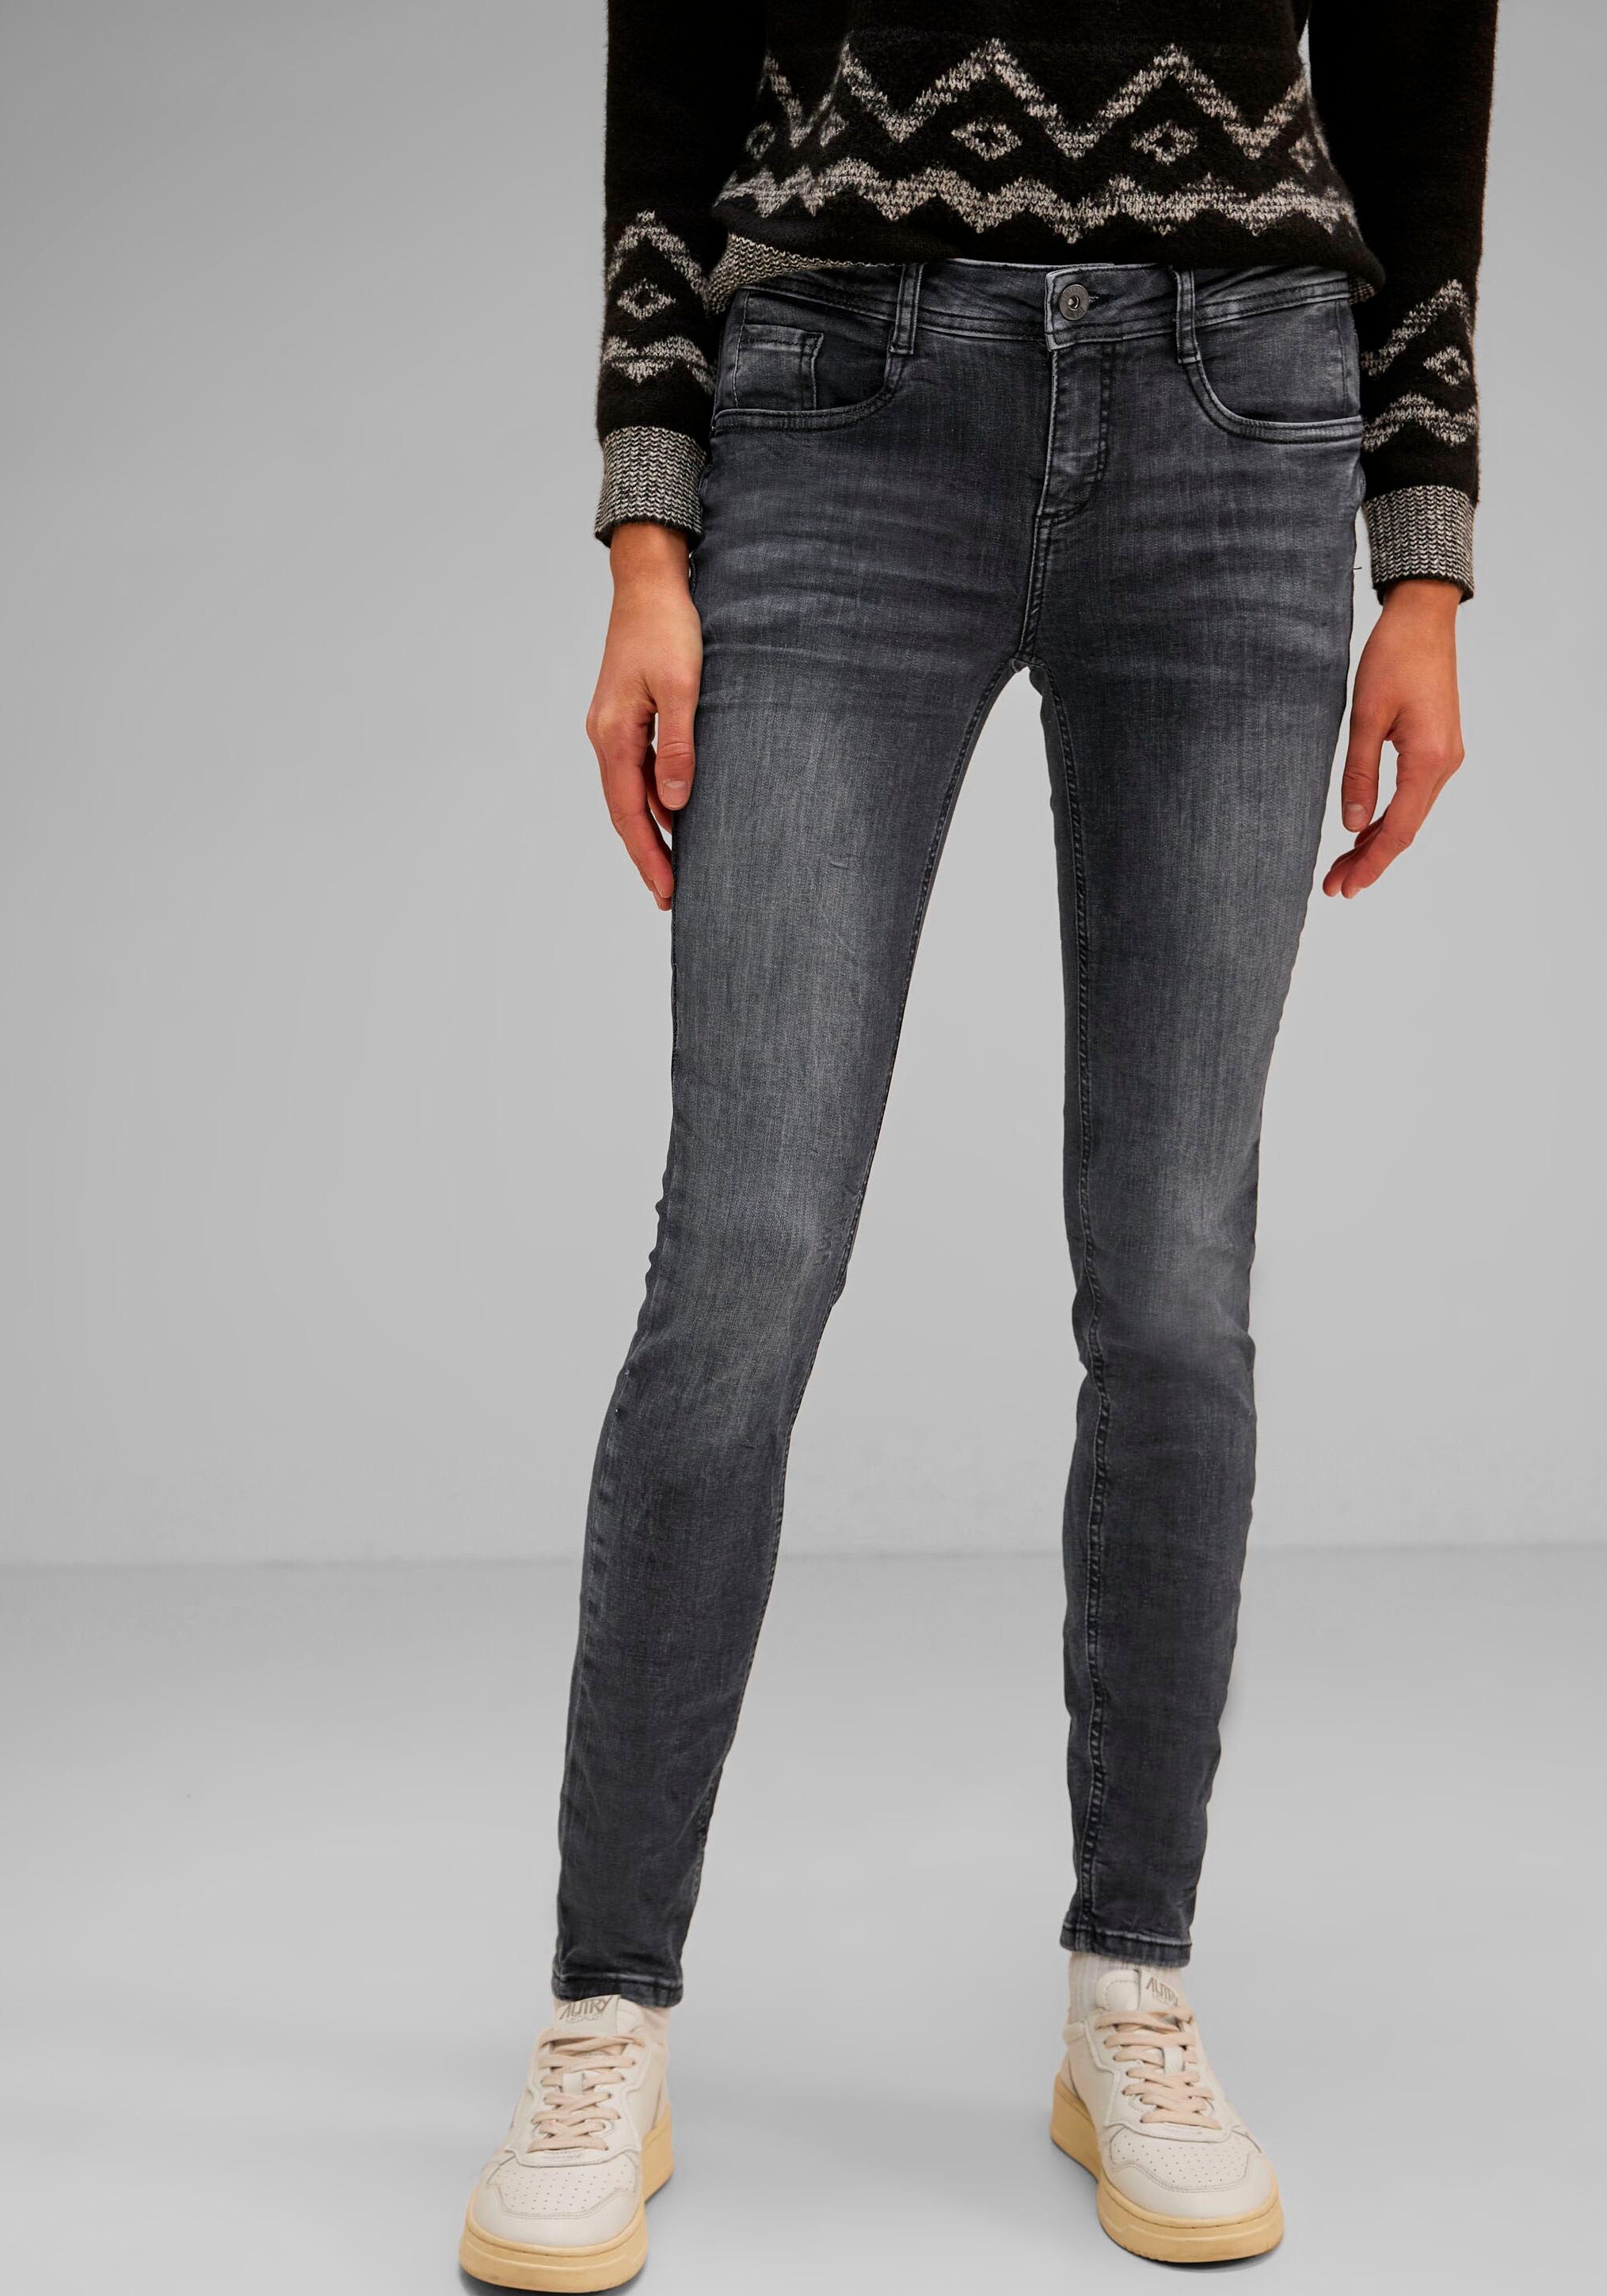 STREET ONE Skinny-fit-Jeans, mit schmalem Bein für kaufen | BAUR